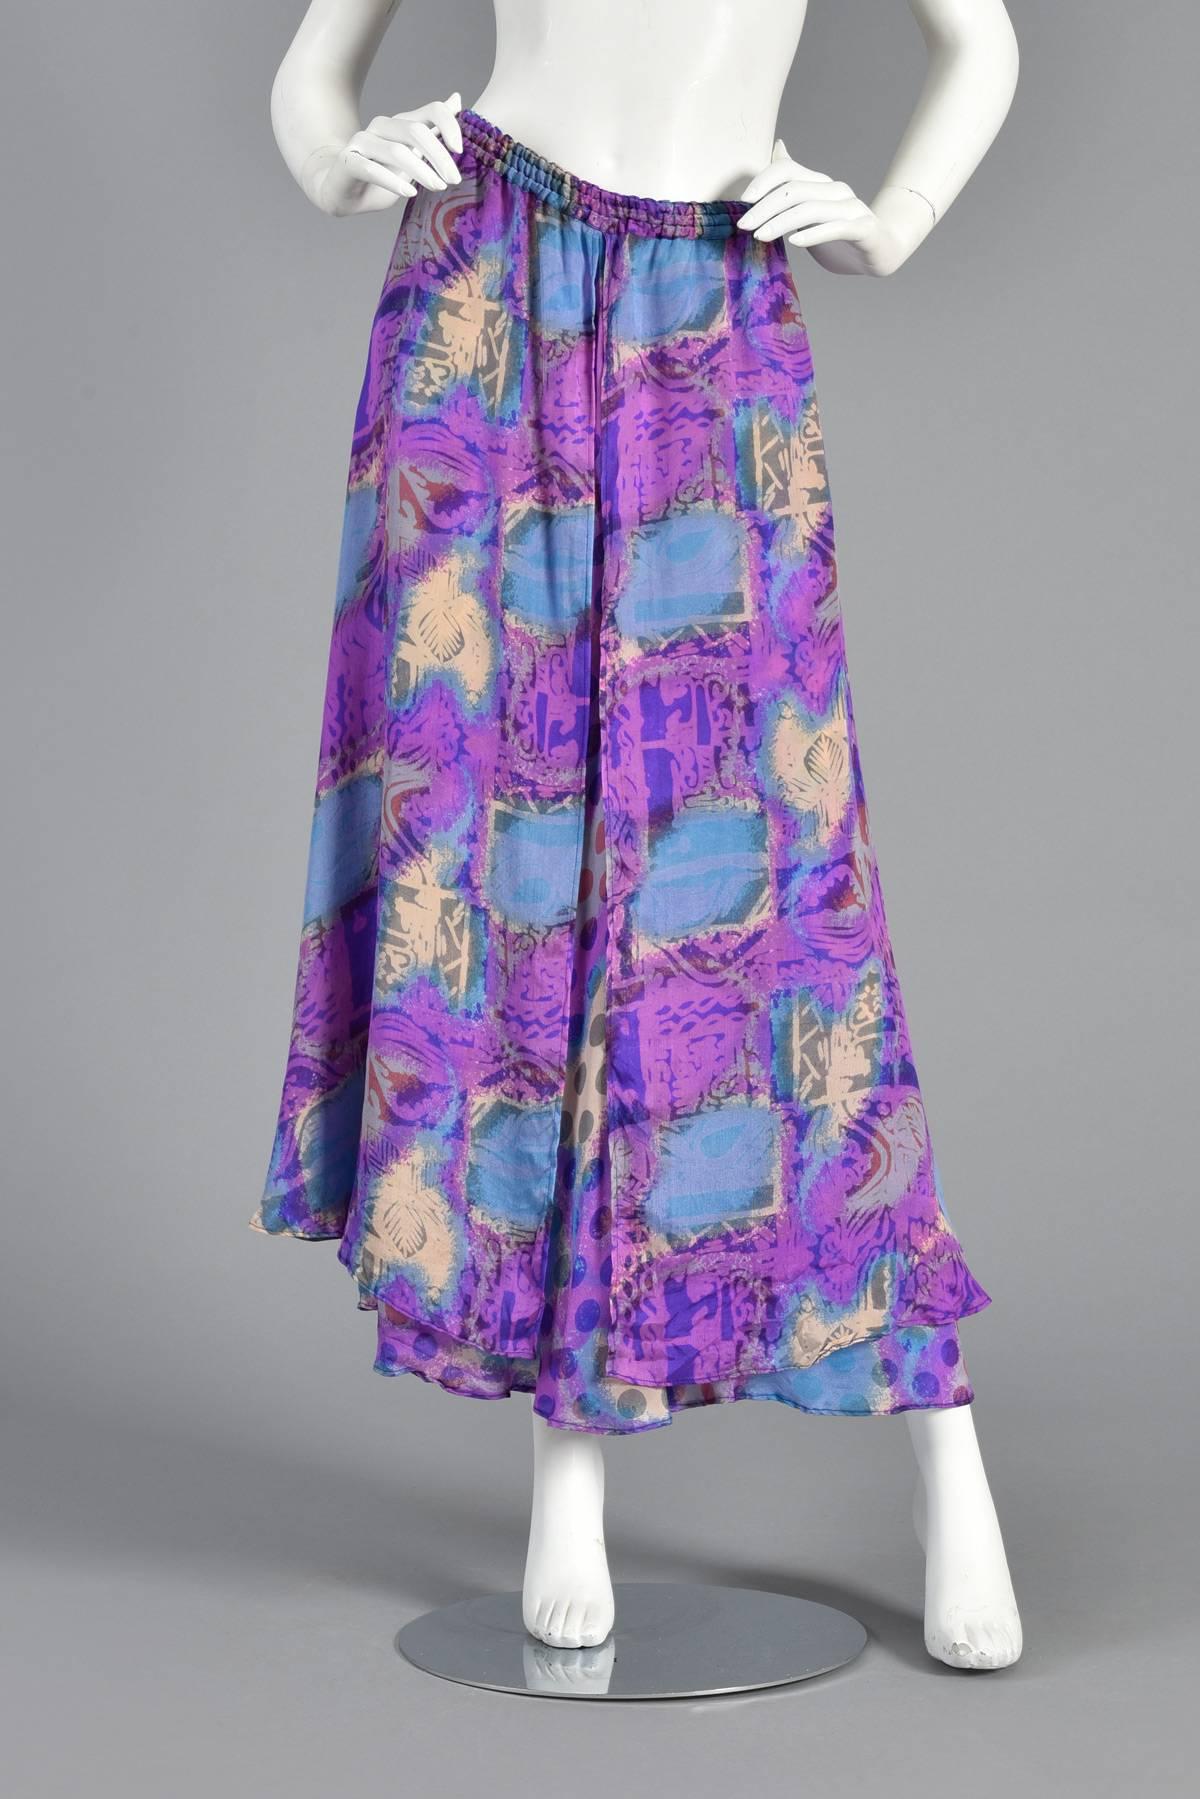 Women's Asymmetrical Draped Graphic Silk Dress Ensemble For Sale